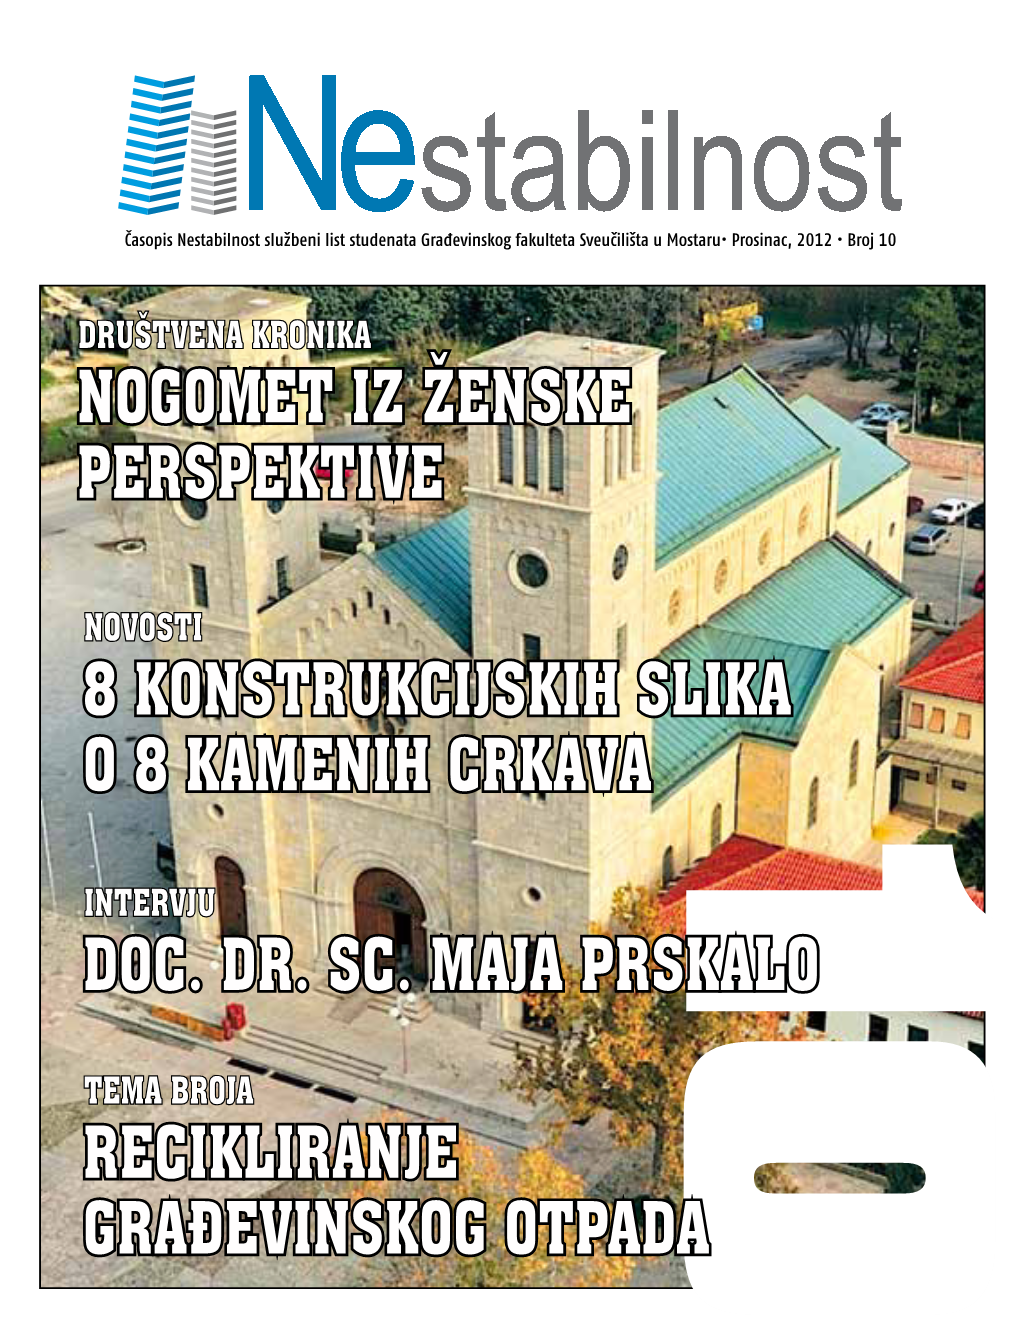 Broj 10 2012 • Broj Prosinac, U Mostaru• Sveučilišta Fakulteta Građevinskog Studenata Službeni List Nestabilnost Časopis